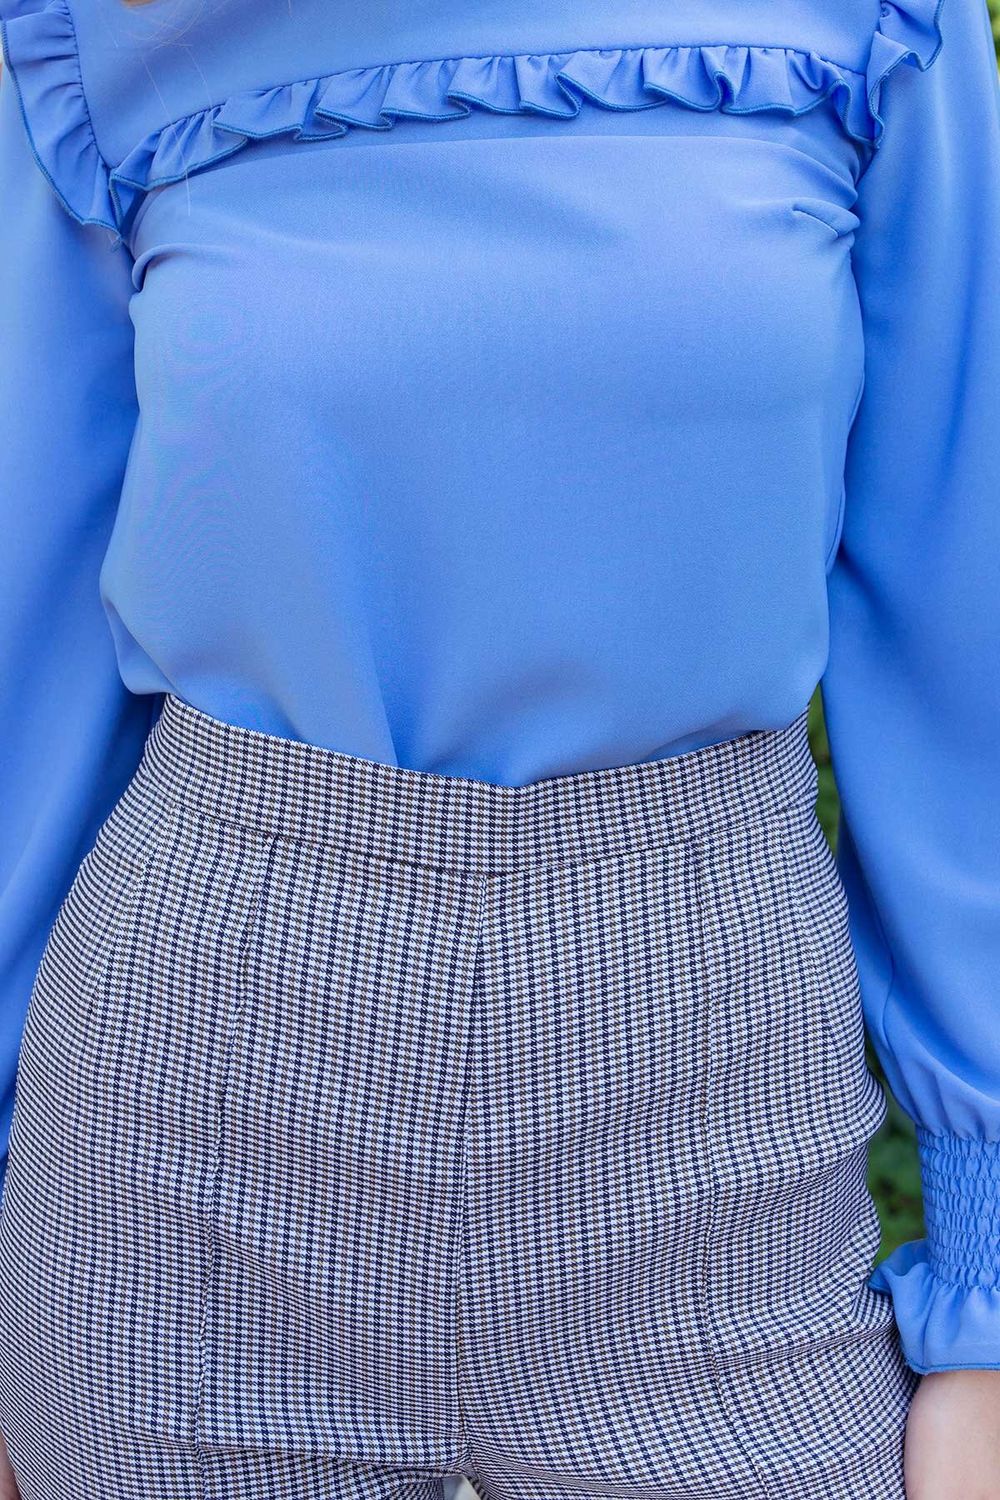 Красивая блузка с длинным рукавом голубая - фото